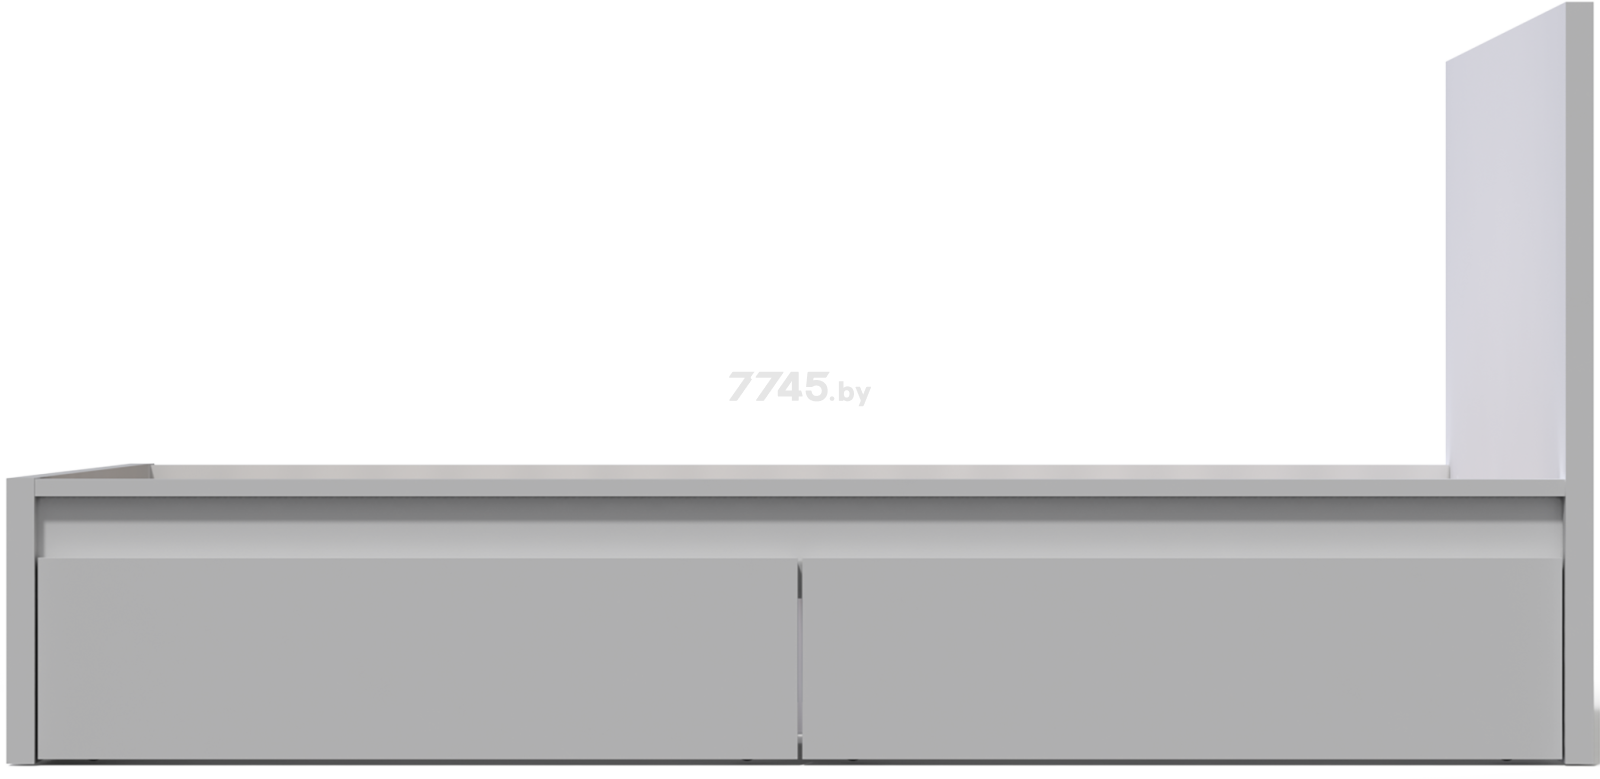 Комплект выкатных ящиков MEBELAIN Варма Сэнг Бокс 100x61x26,5 белый пигмент 2 штуки (00982) - Фото 3